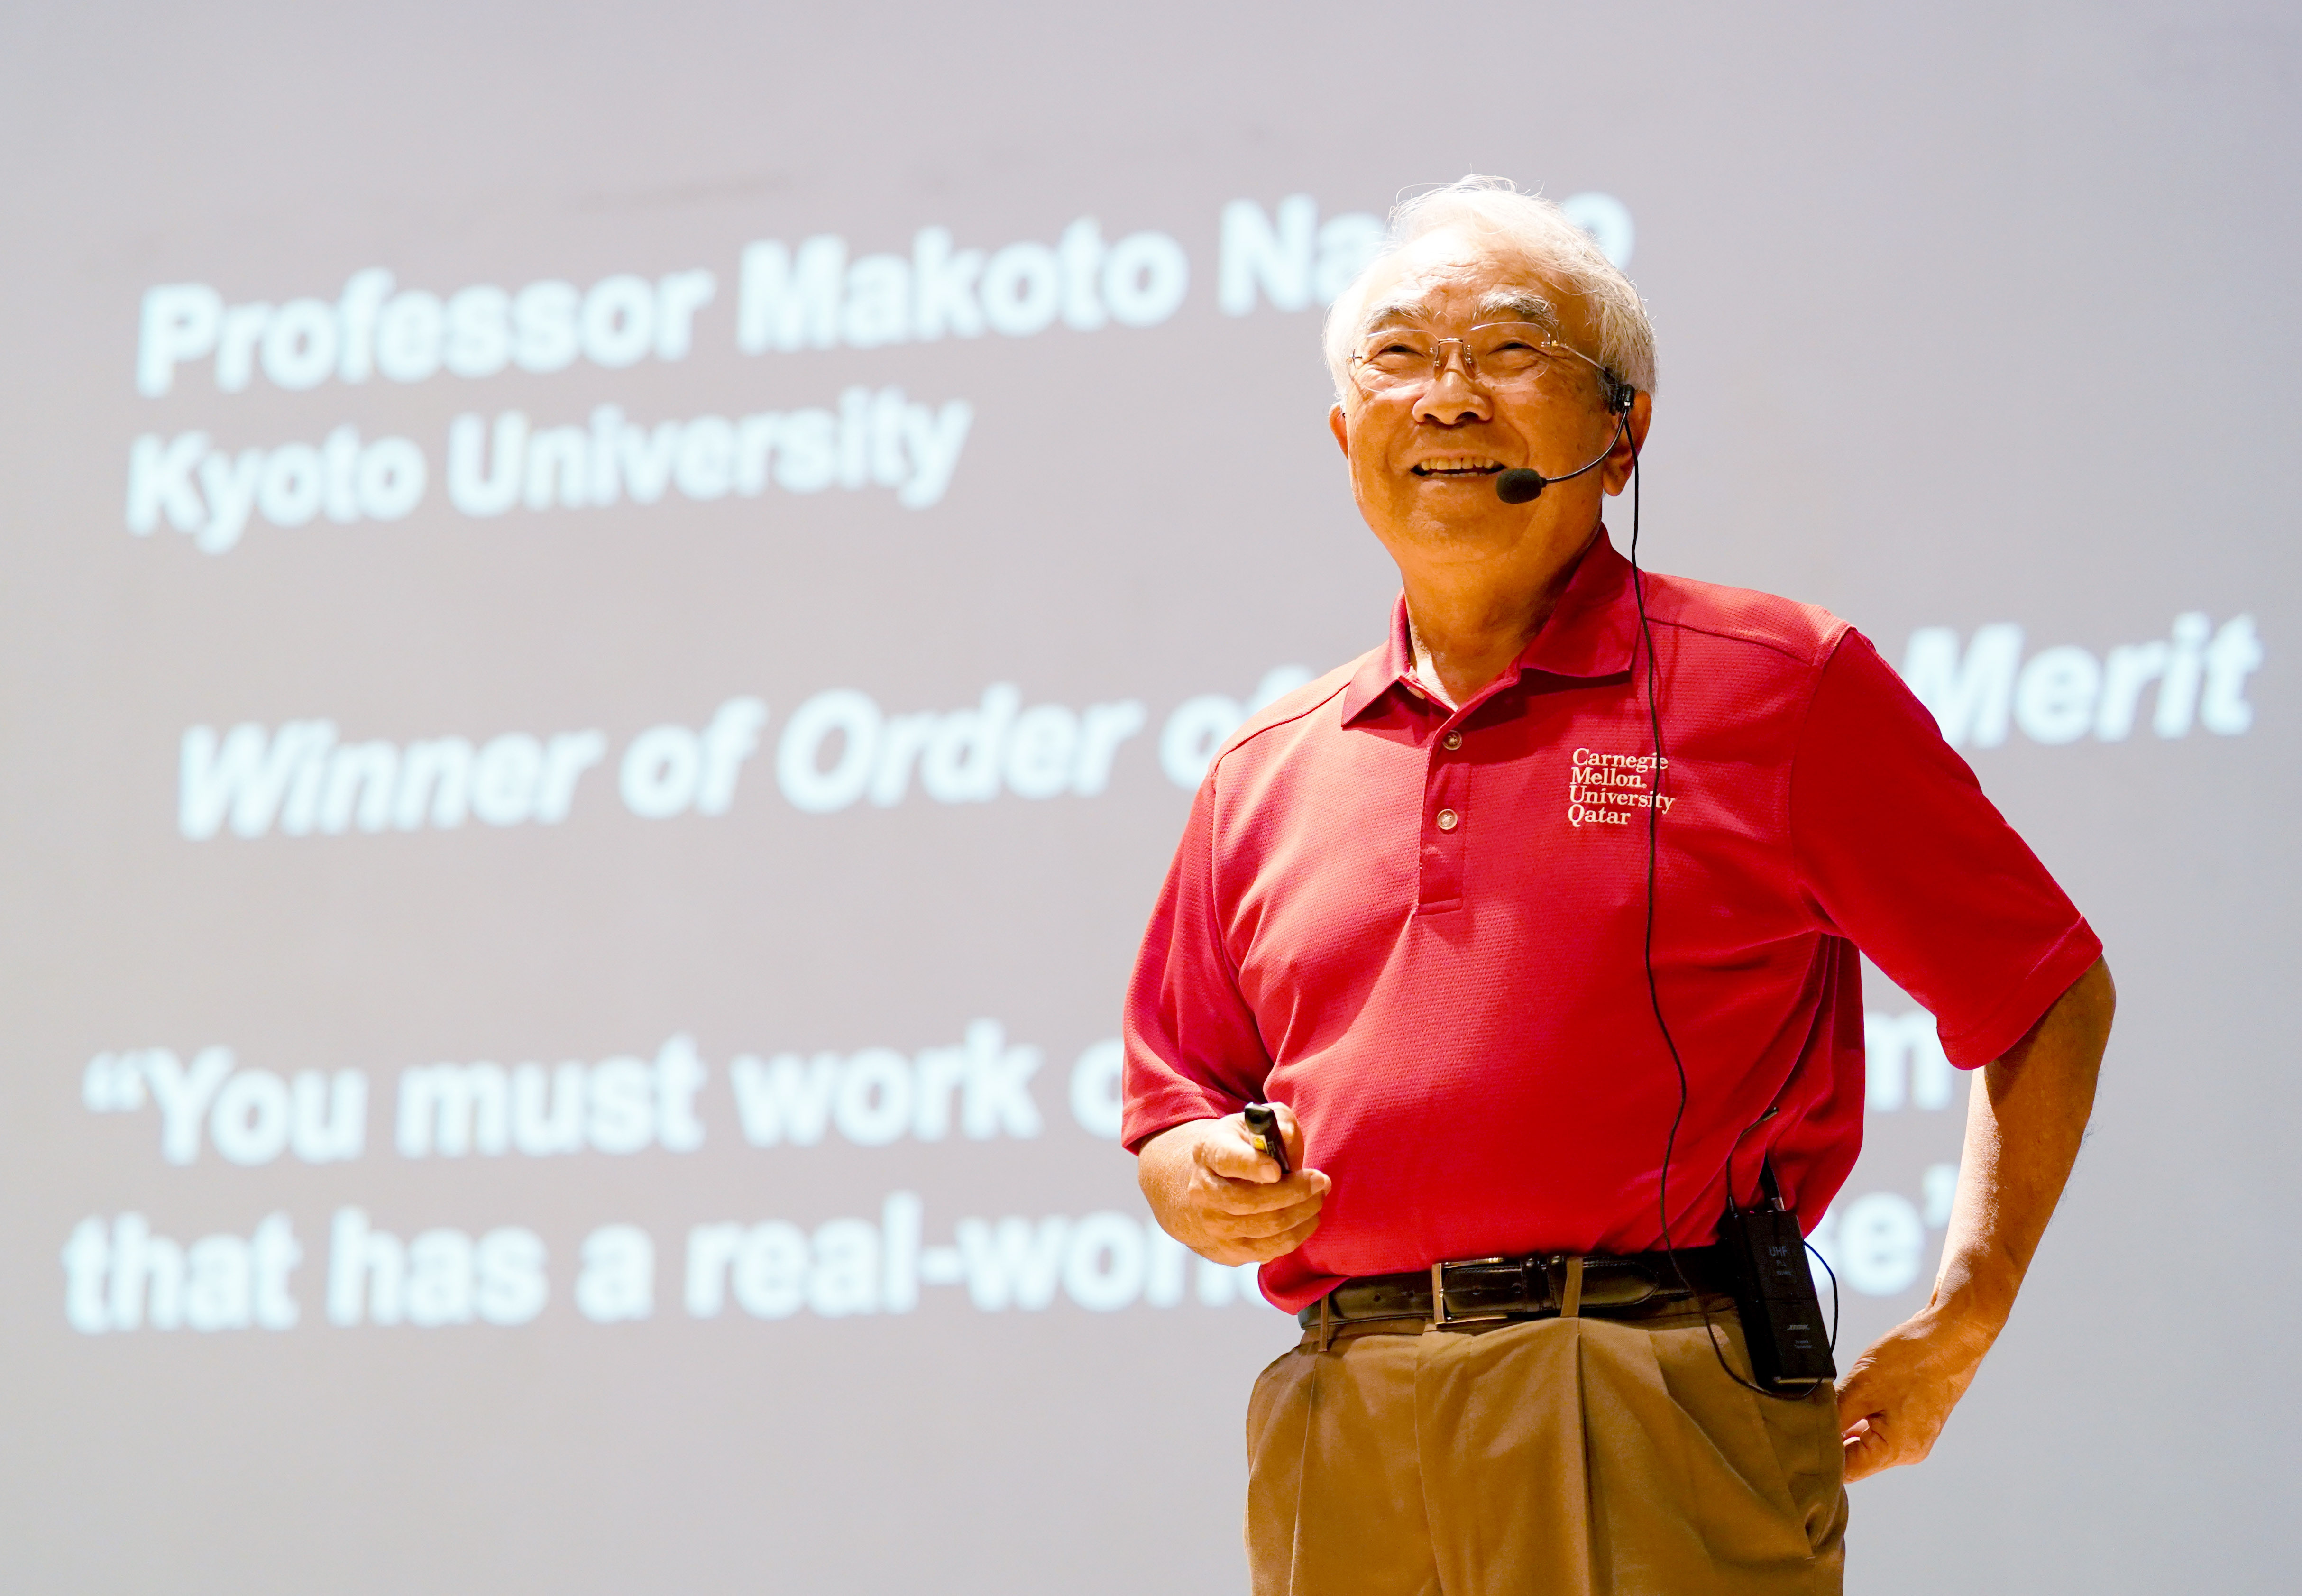 金出武雄博士是電腦視覺領域的傑出研究者，也是機器人工學和影像辨識領域的權威學者